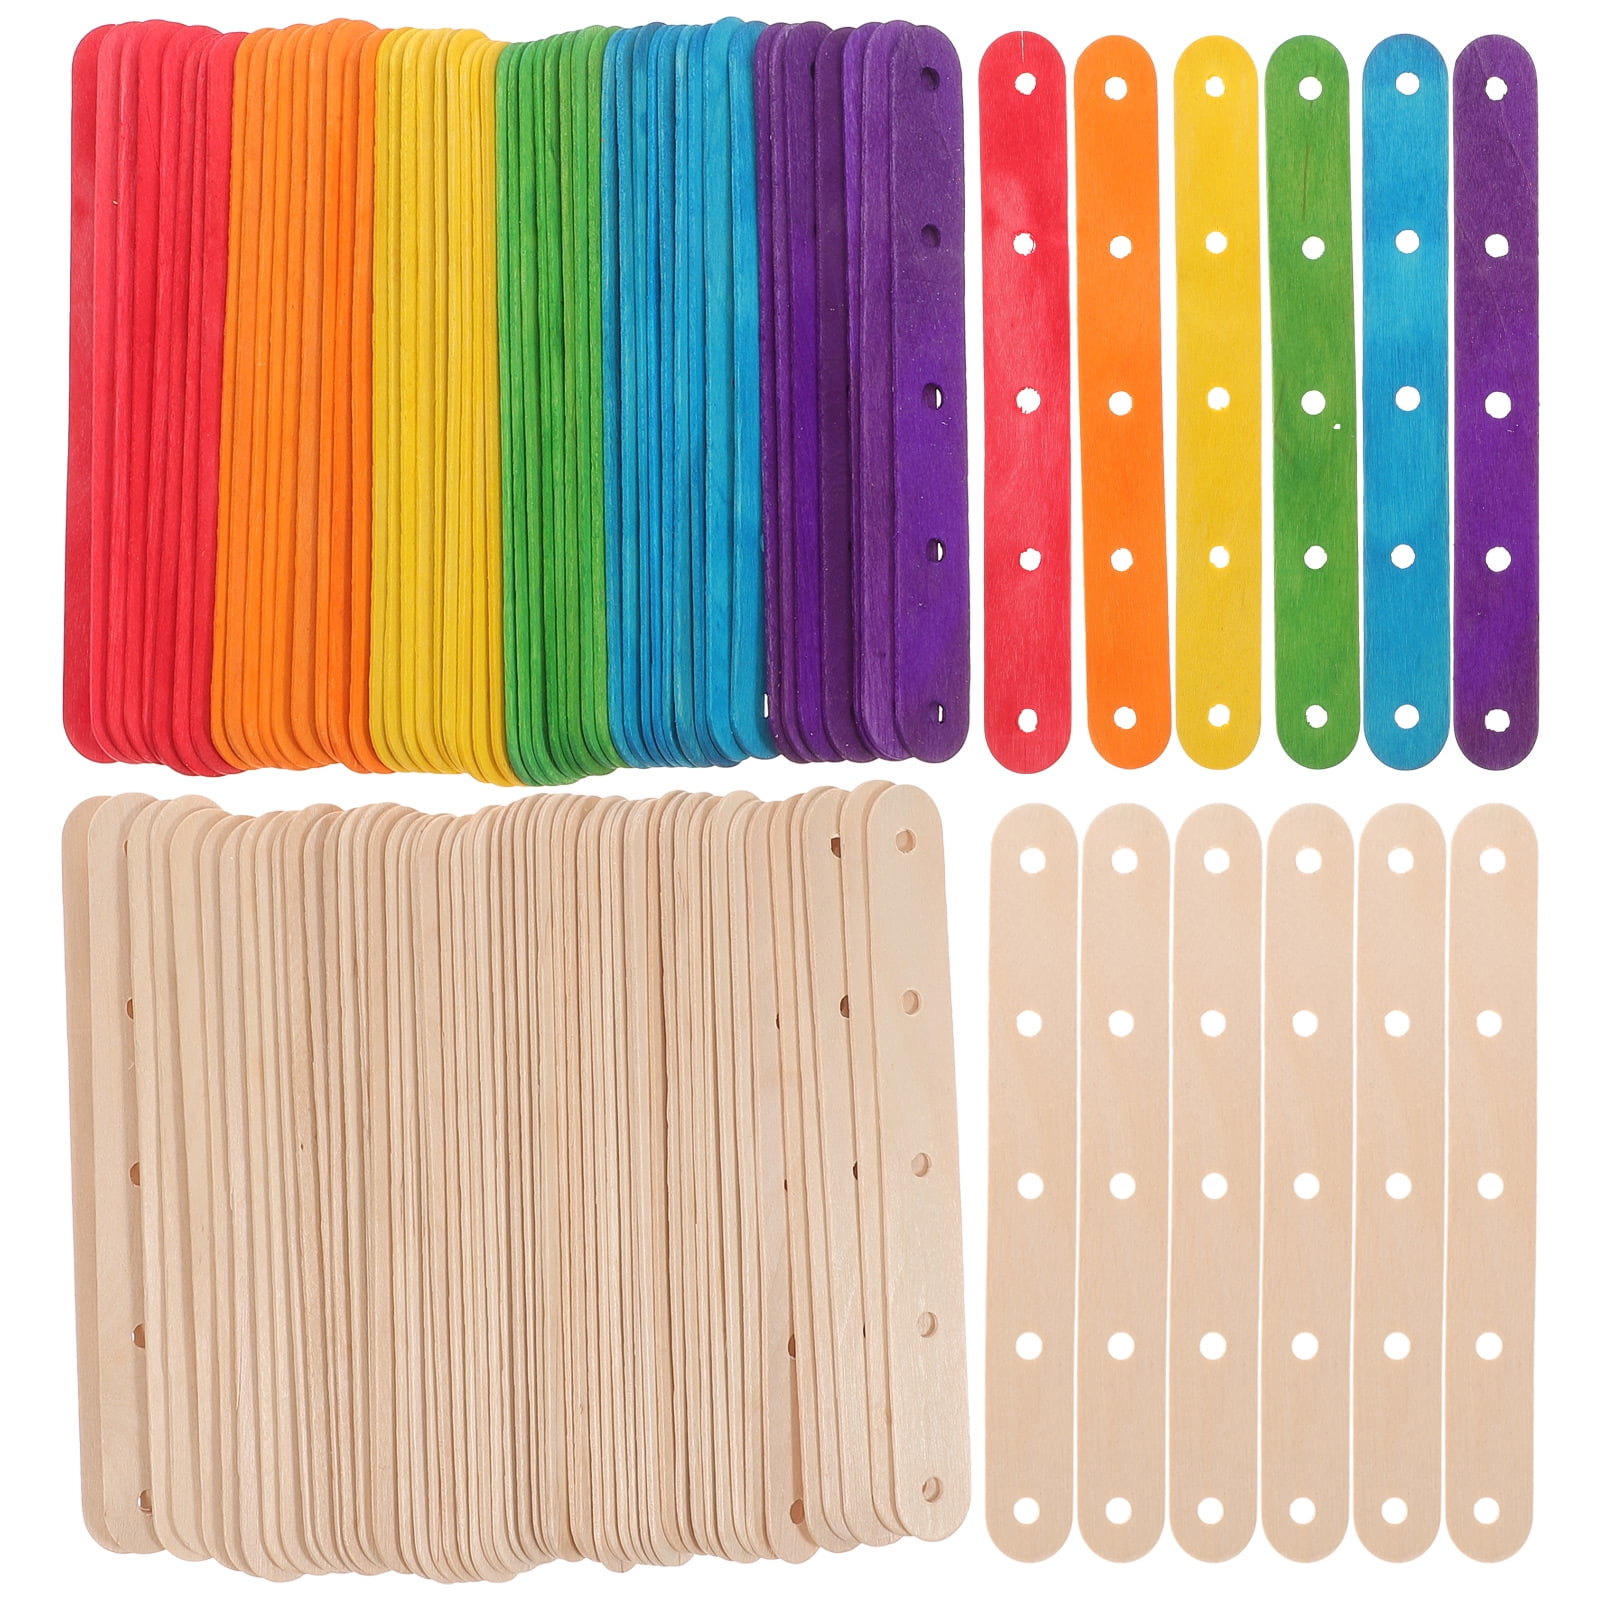 Extra Jumbo Wood Craft Sticks 7.9X0.8 25/Pkg Natural Colour